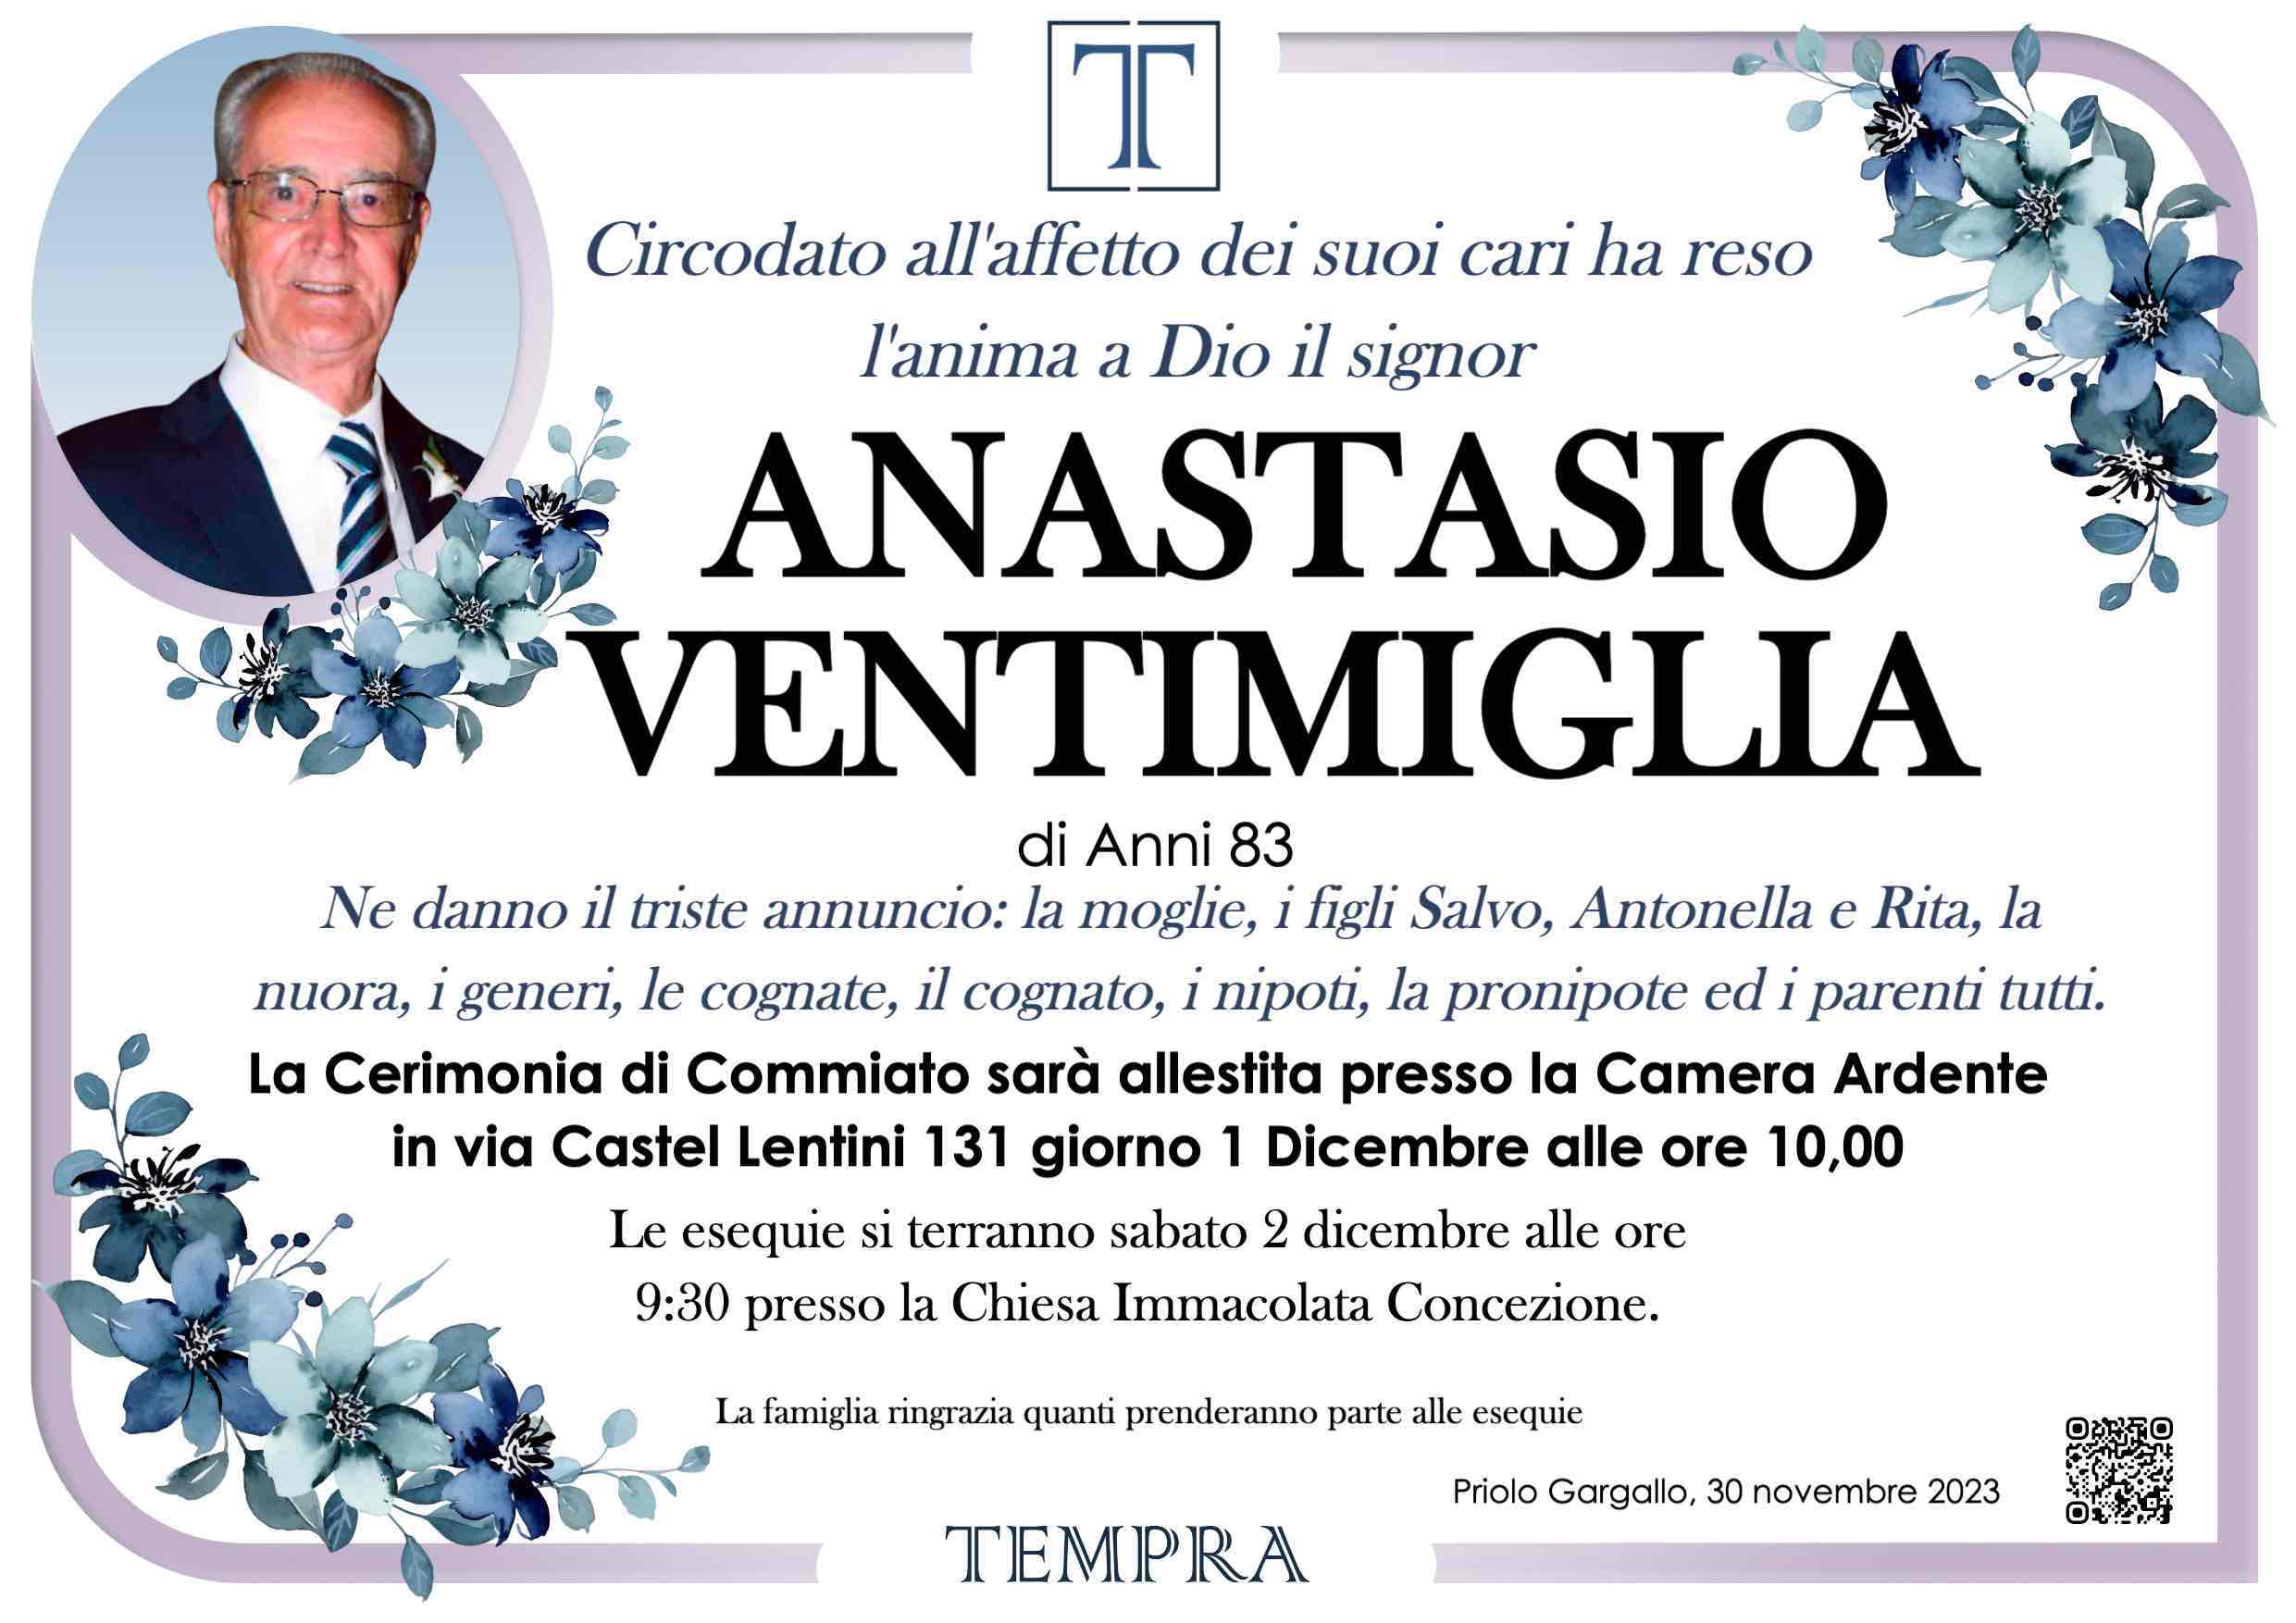 Anastasio Ventimiglia